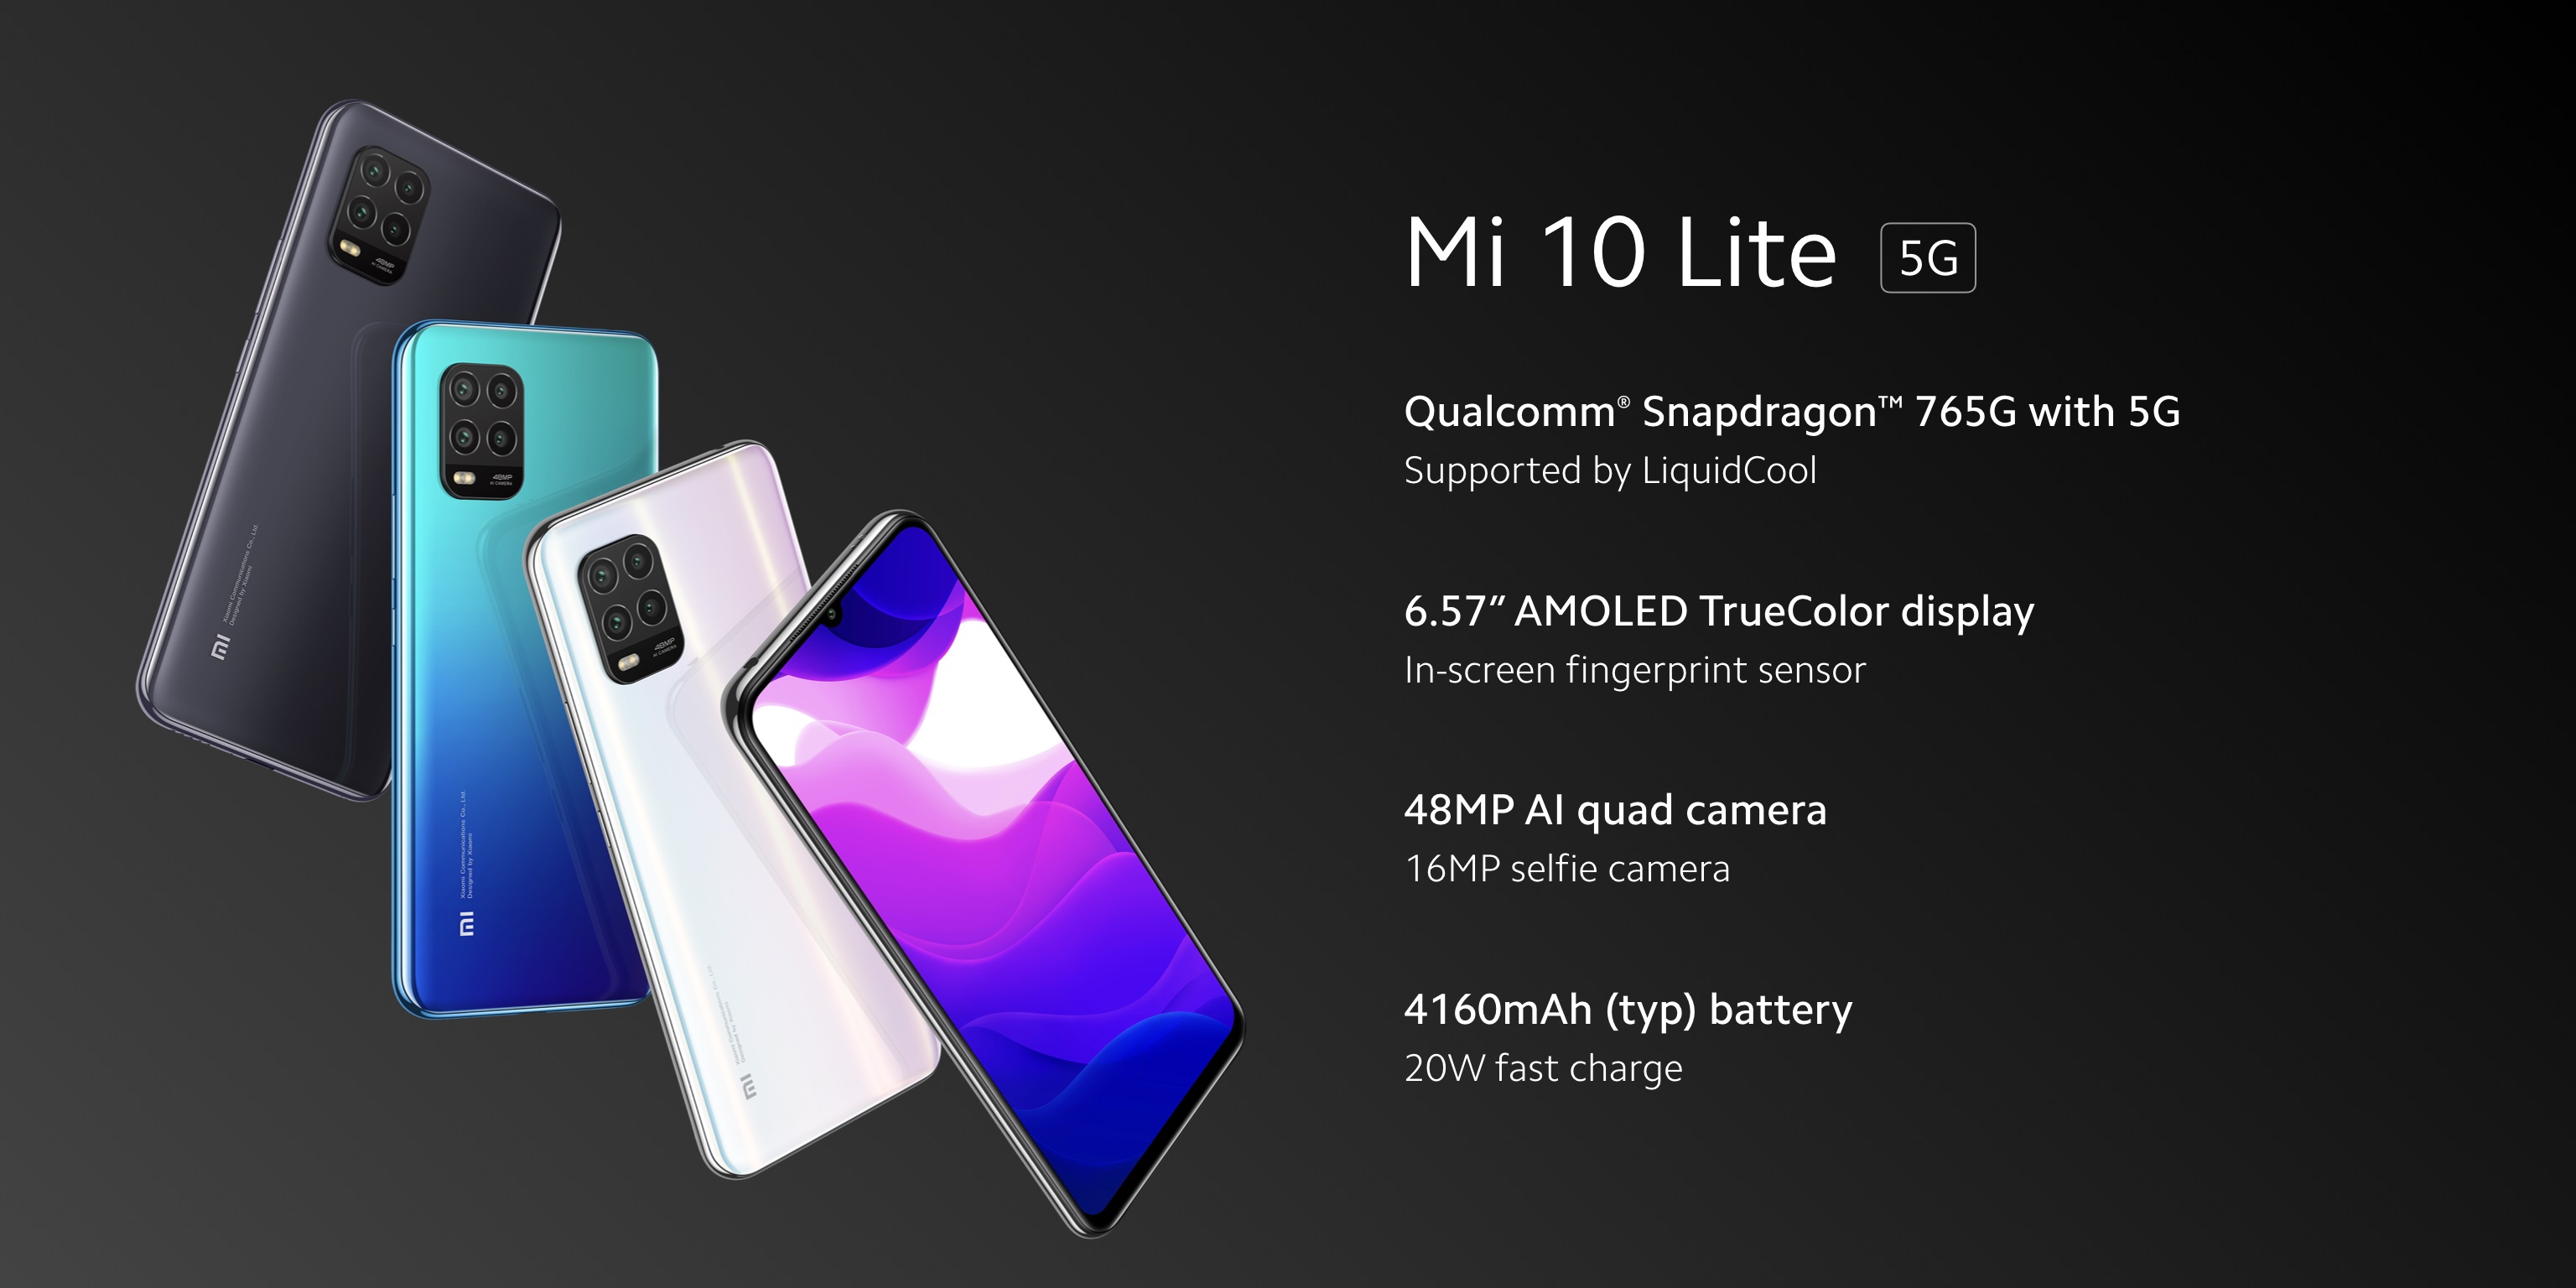 Xiaomi Mi 10 Lite 5G smartphone